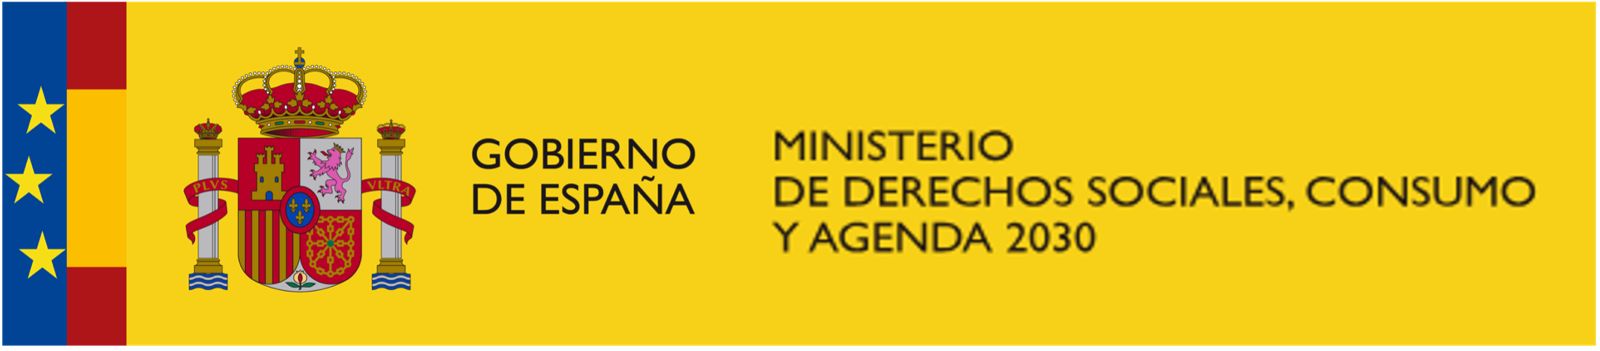 Gobierno de España: Ministerio de derechos sociales, consumo y agenda 2030